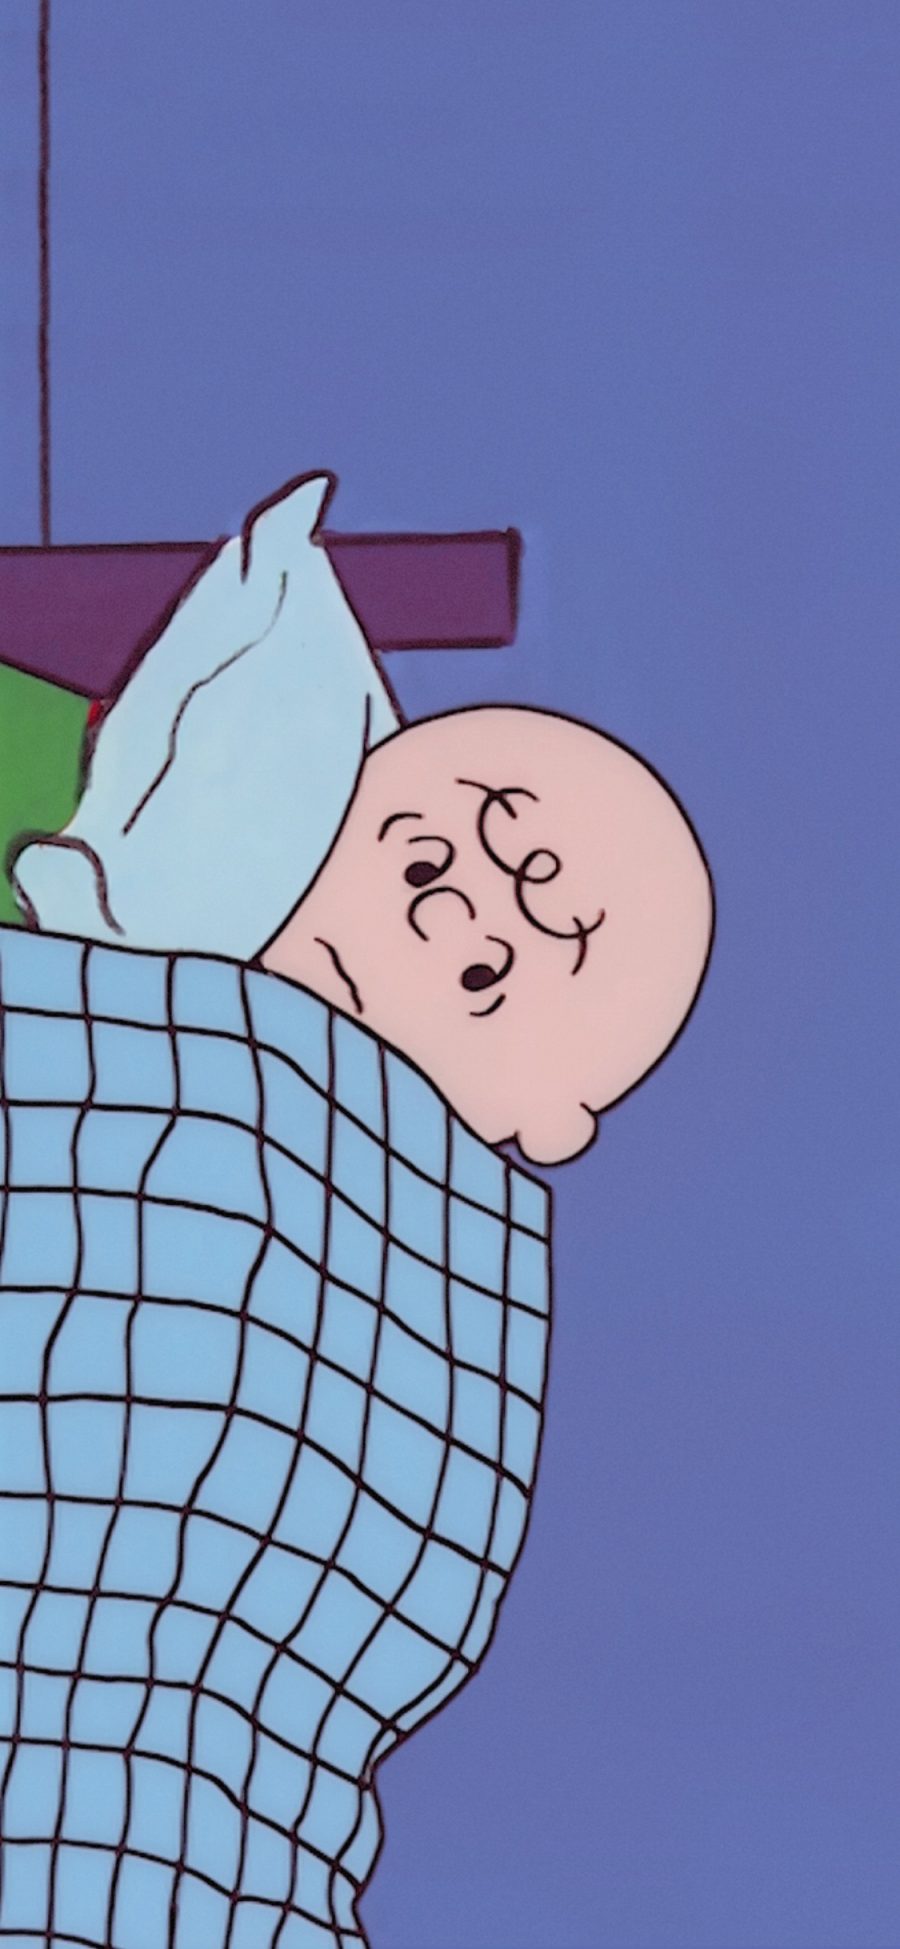 [2436×1125]美国 花生漫画 查理布朗 睡觉 苹果手机动漫壁纸图片